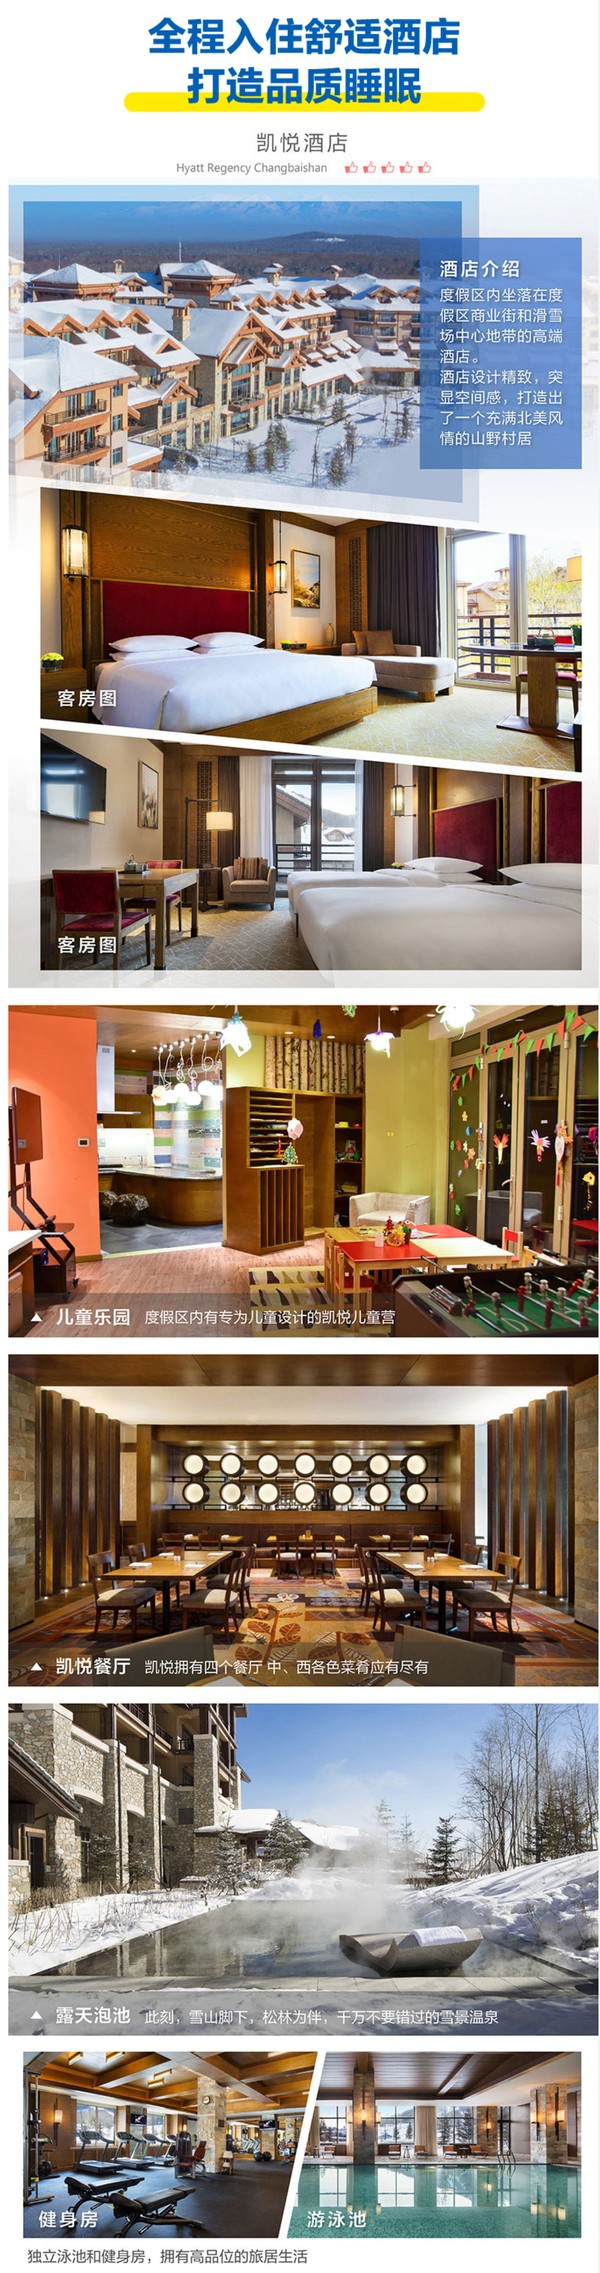 上海-长白山4天3晚自由行 含往返机票+3晚酒店+接送机